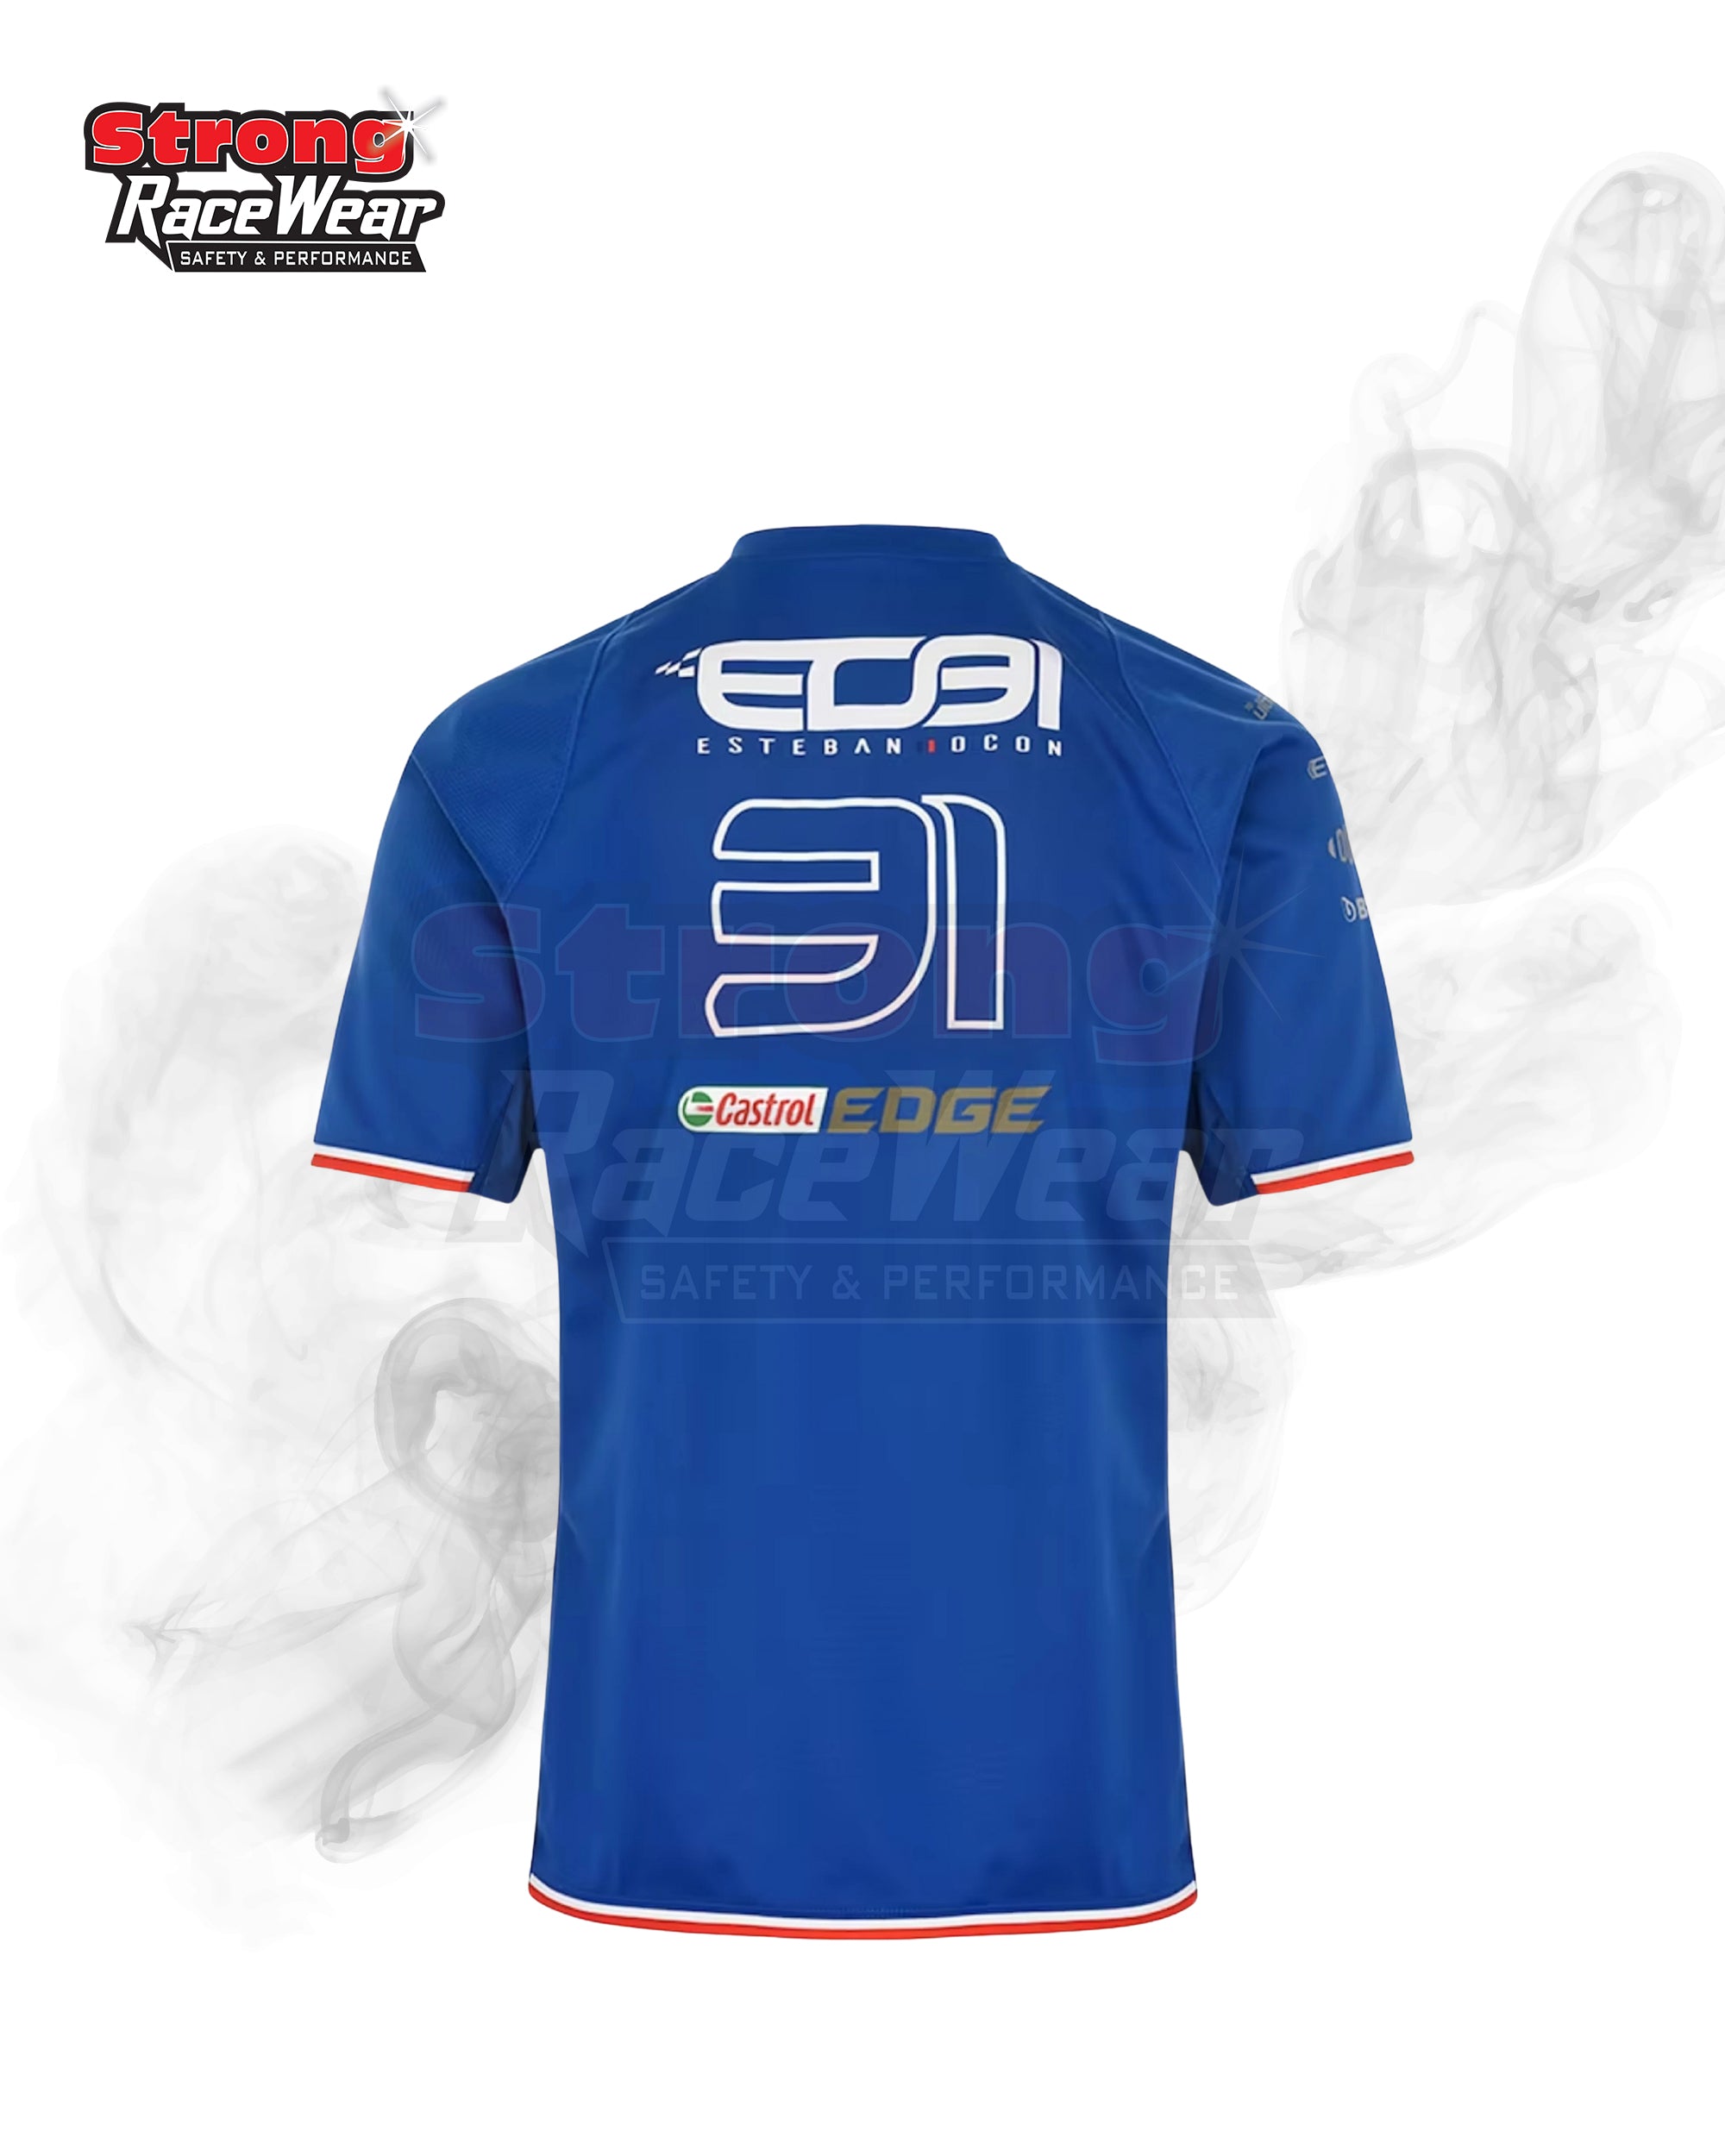 BWT Alpine F1 Team Ocon 2022 Driver T-Shirt